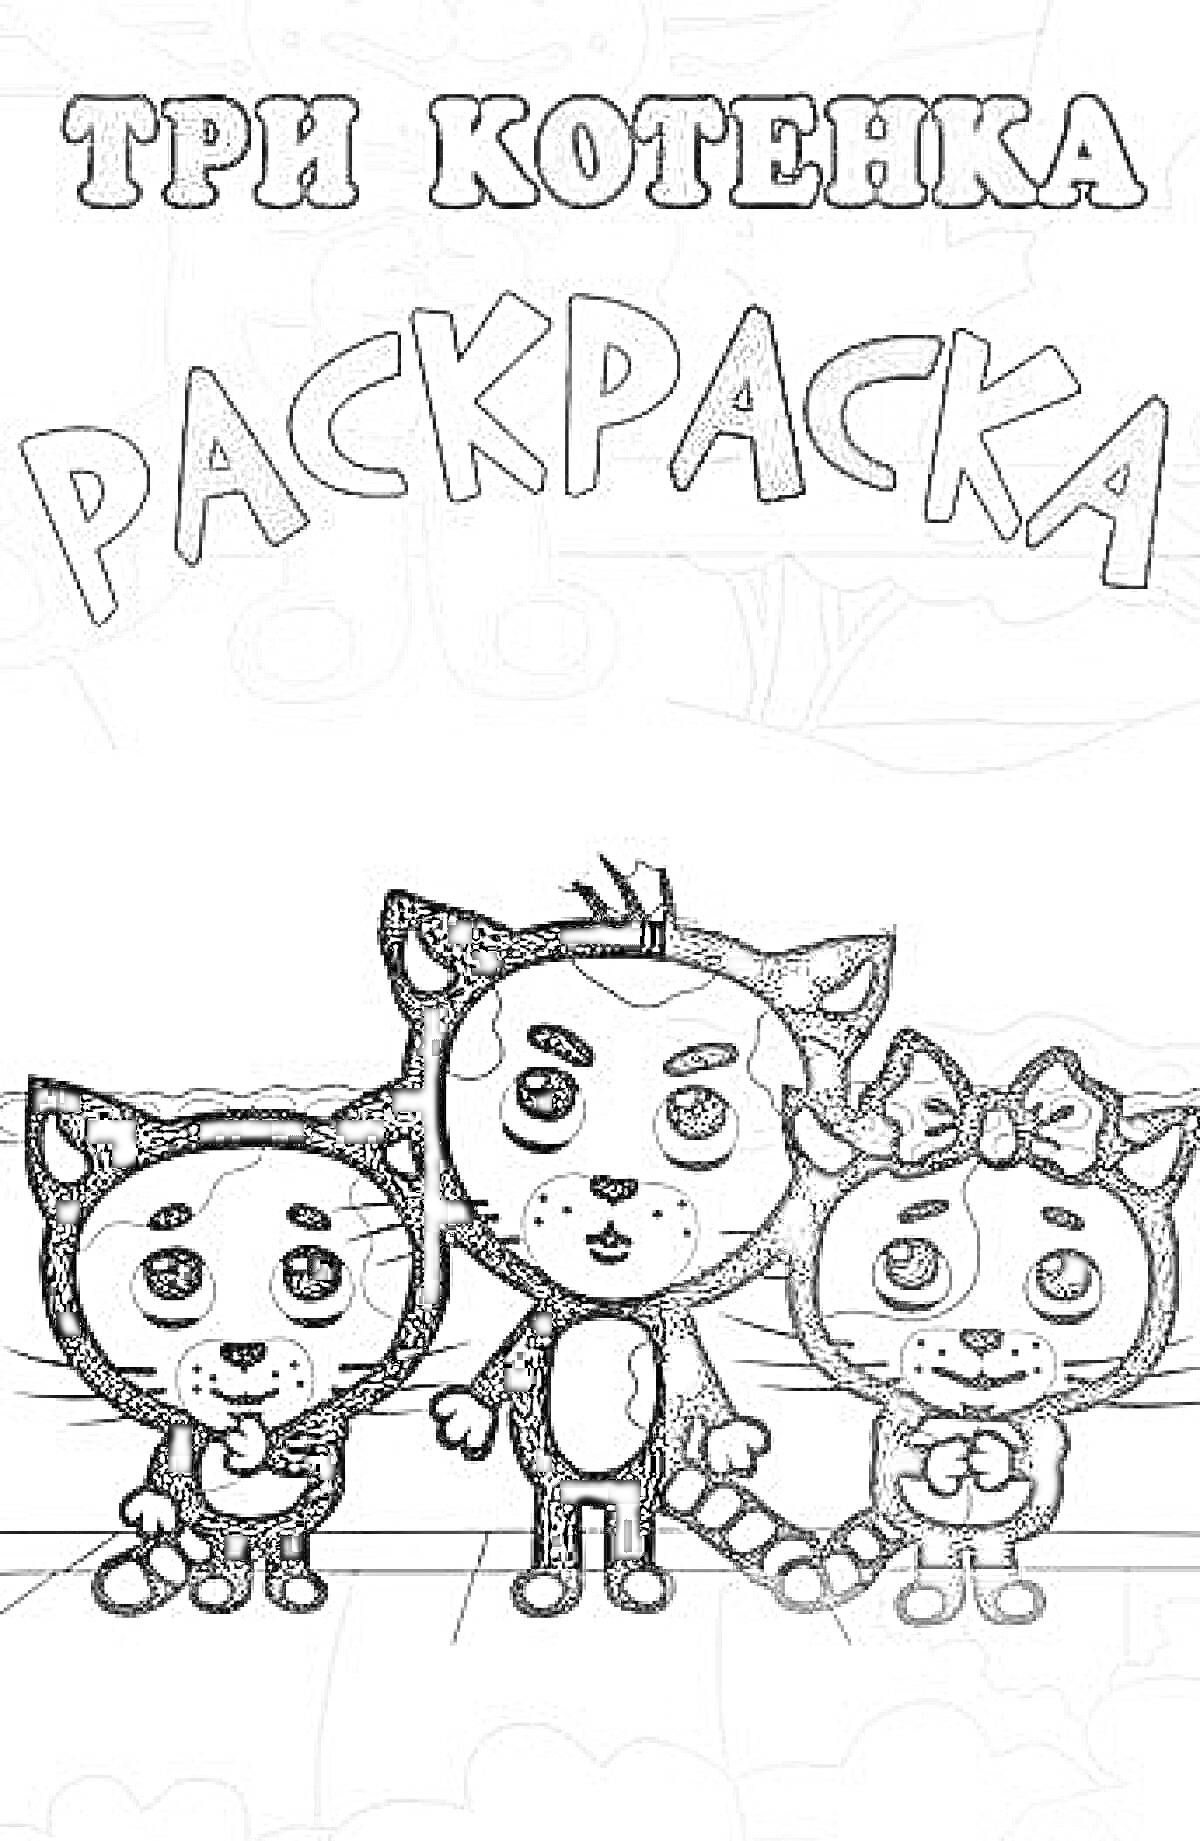 Раскраска Три котенка, раскраска с тремя маленькими котятами на переднем плане, два котенка по бокам держатся за руки, у одного котенка на правой стороне есть бант